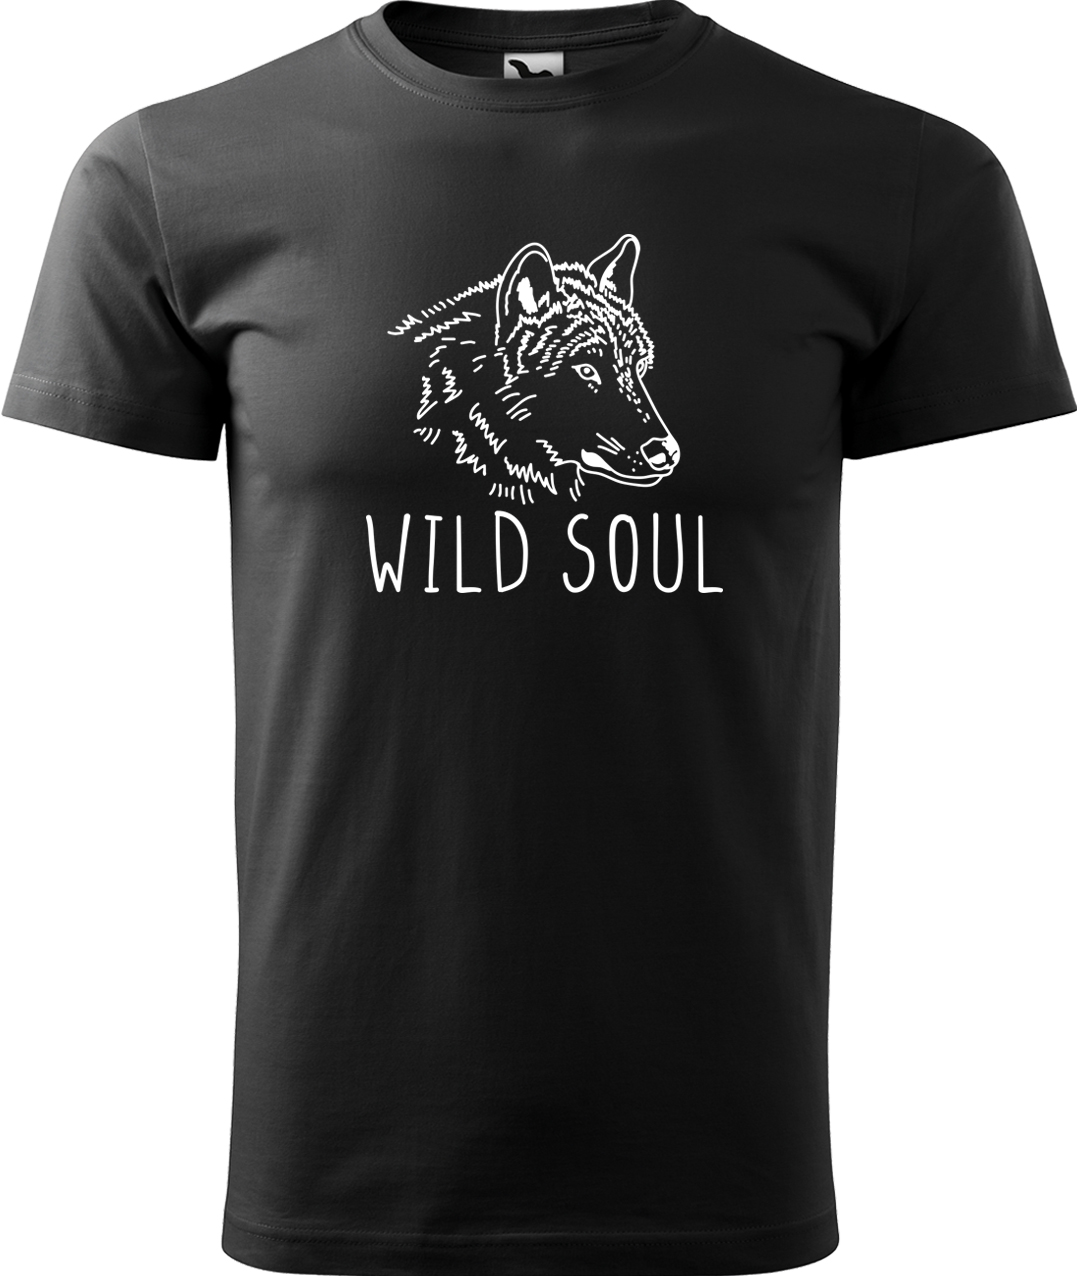 Pánské tričko s vlkem - Wild soul Velikost: M, Barva: Černá (01), Střih: pánský